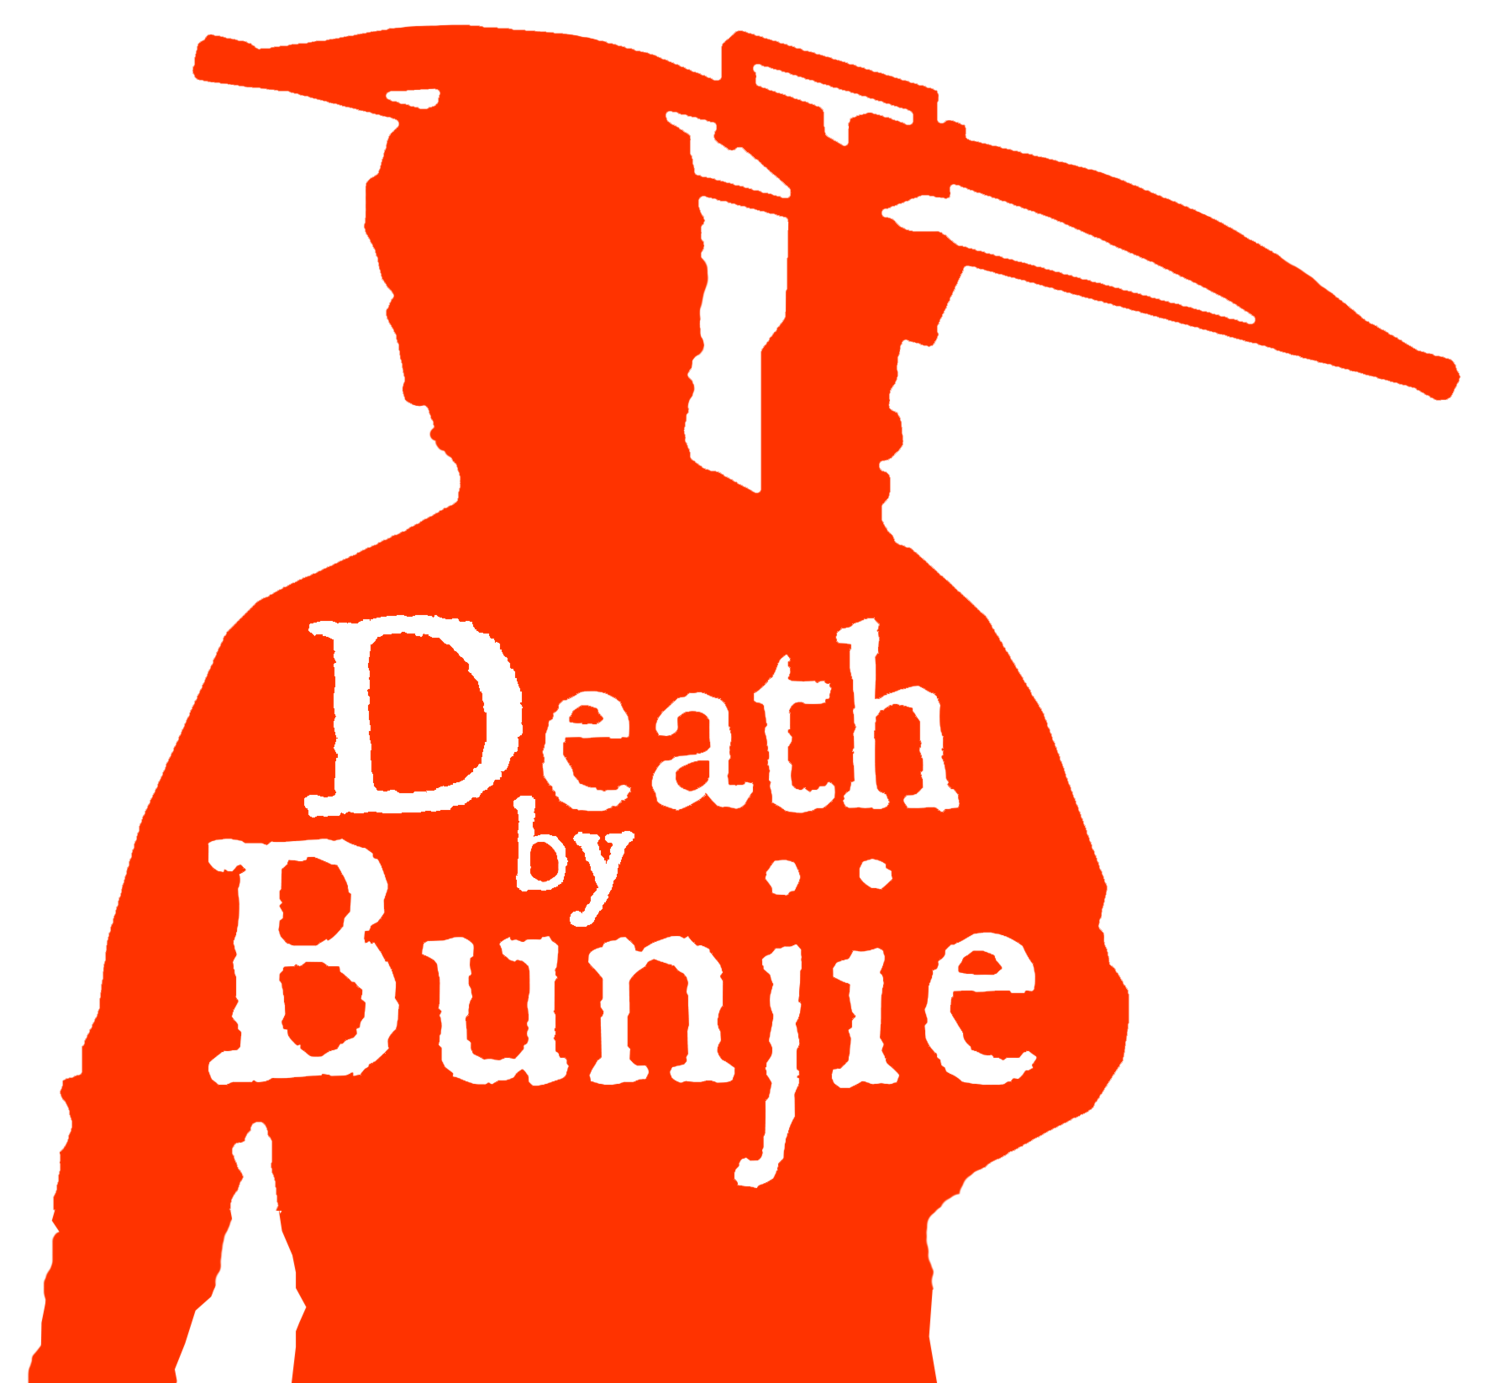 Death by Bunjie